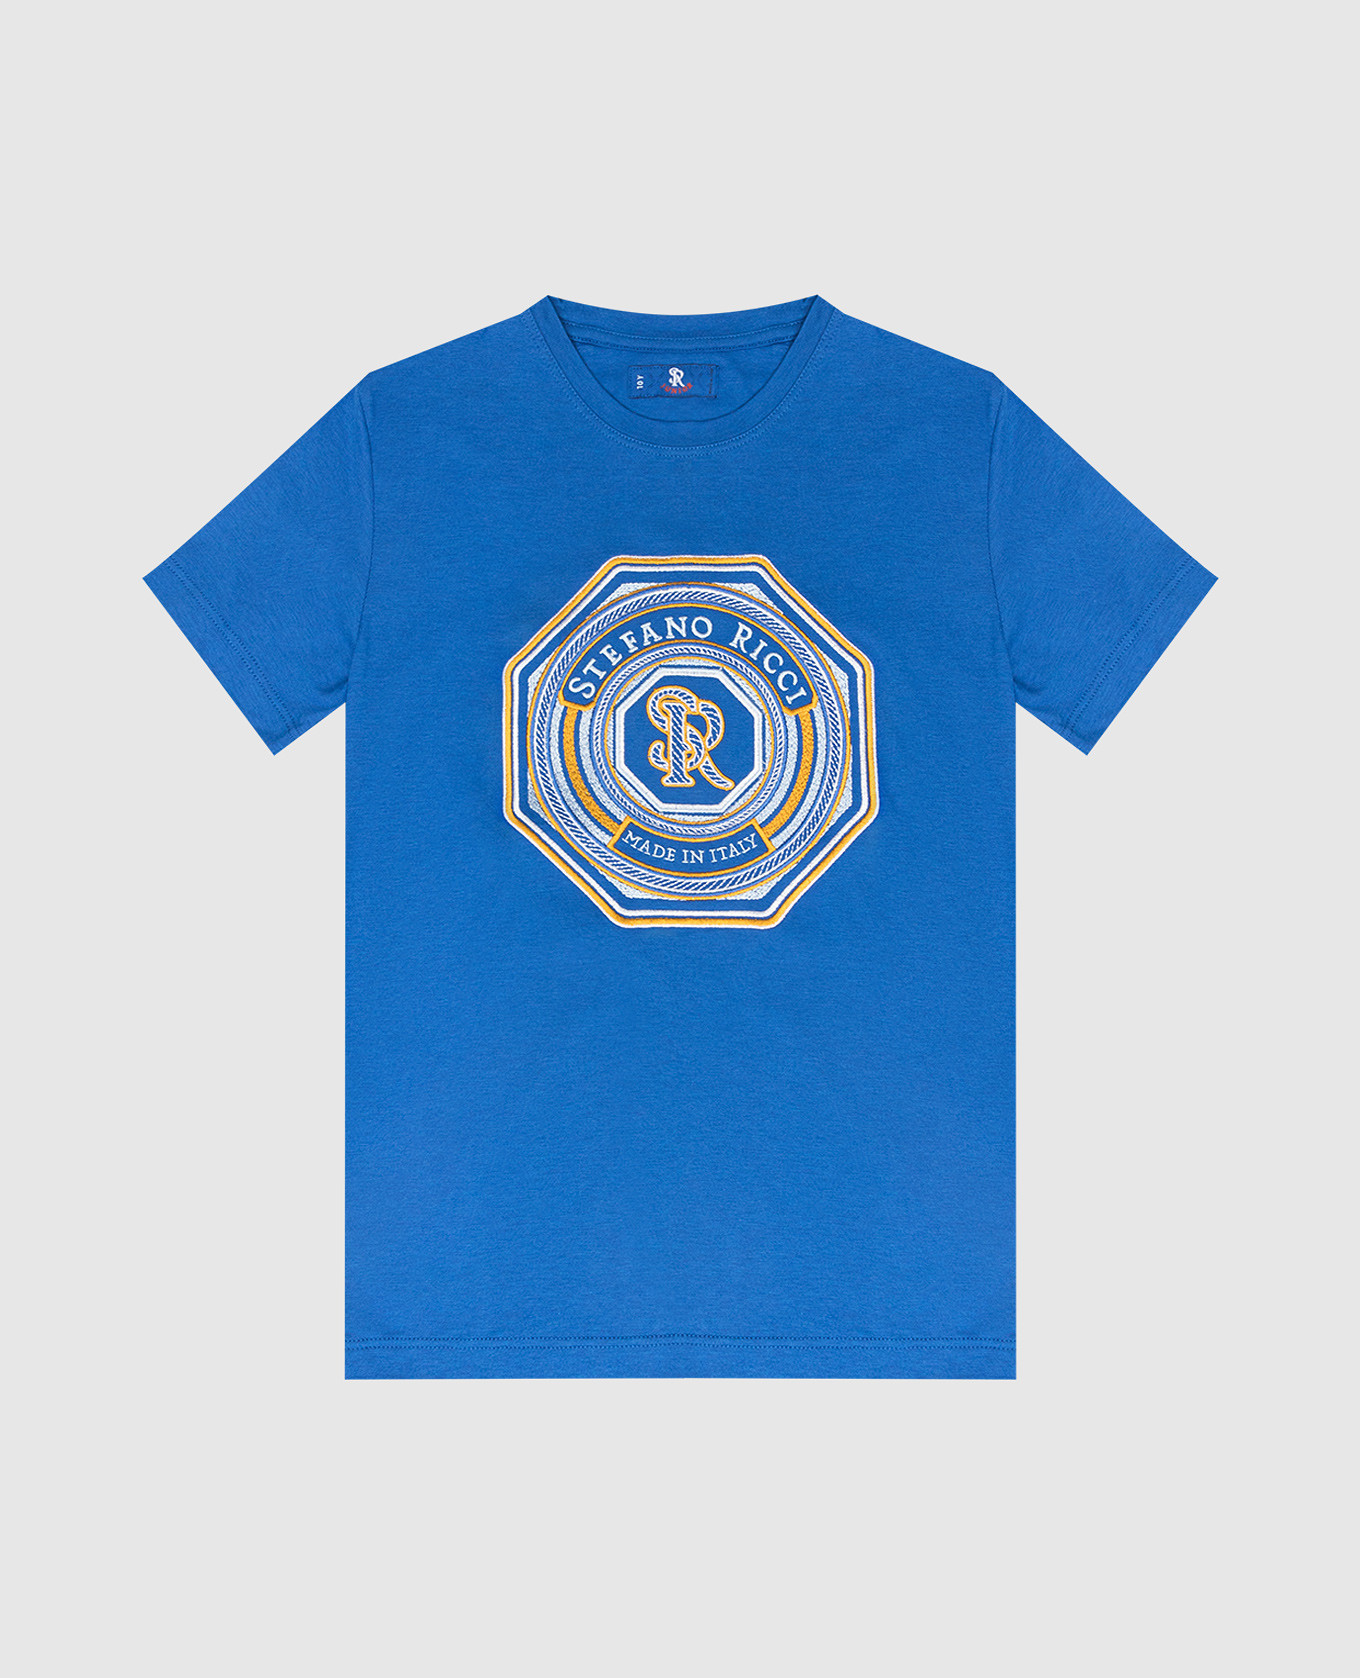 Детская синяя футболка с вышивкой логотипа